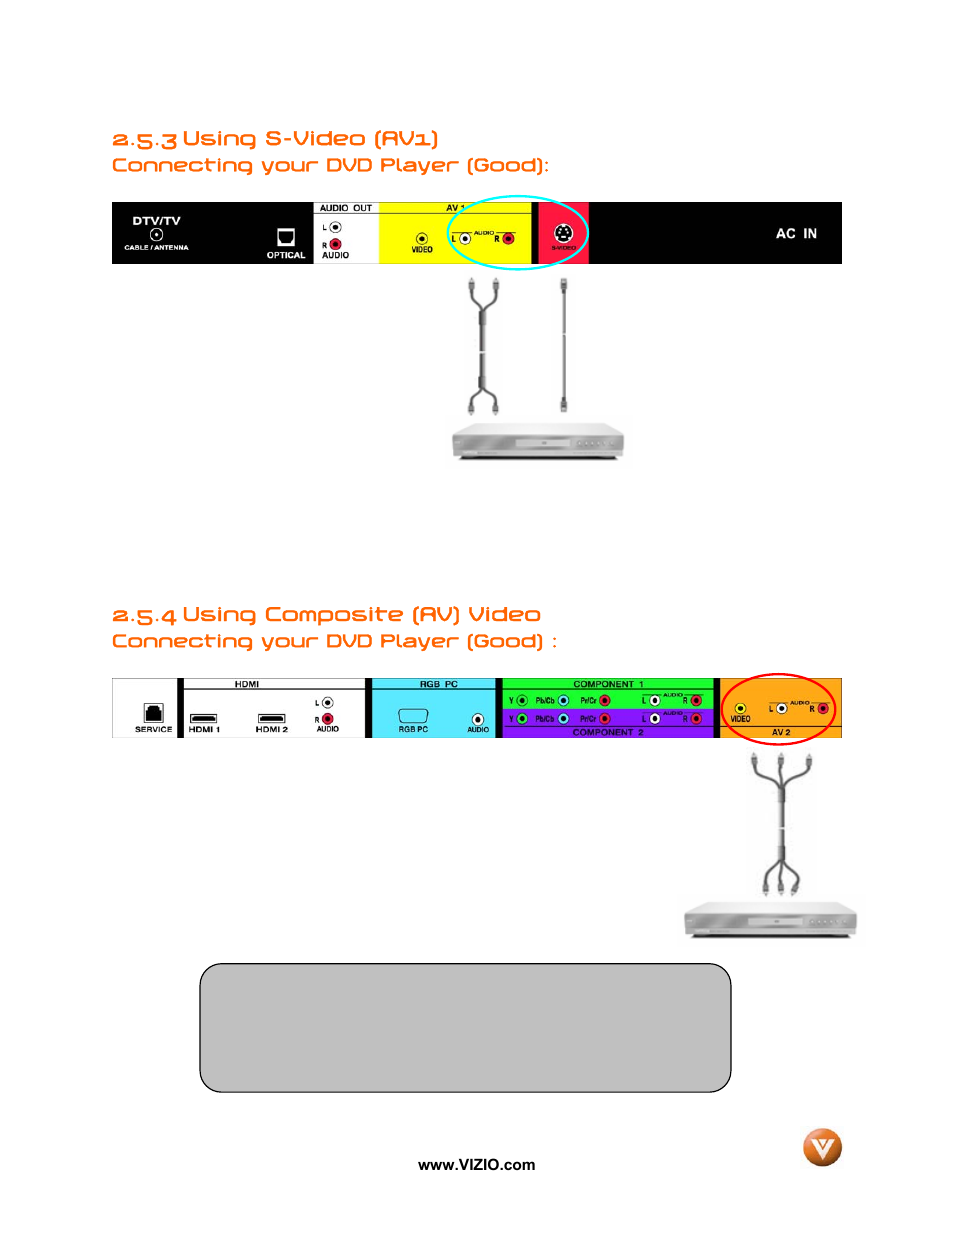 3 using s-video (av1), 4 using composite (av) video | Vizio VP42 User Manual | Page 21 / 57